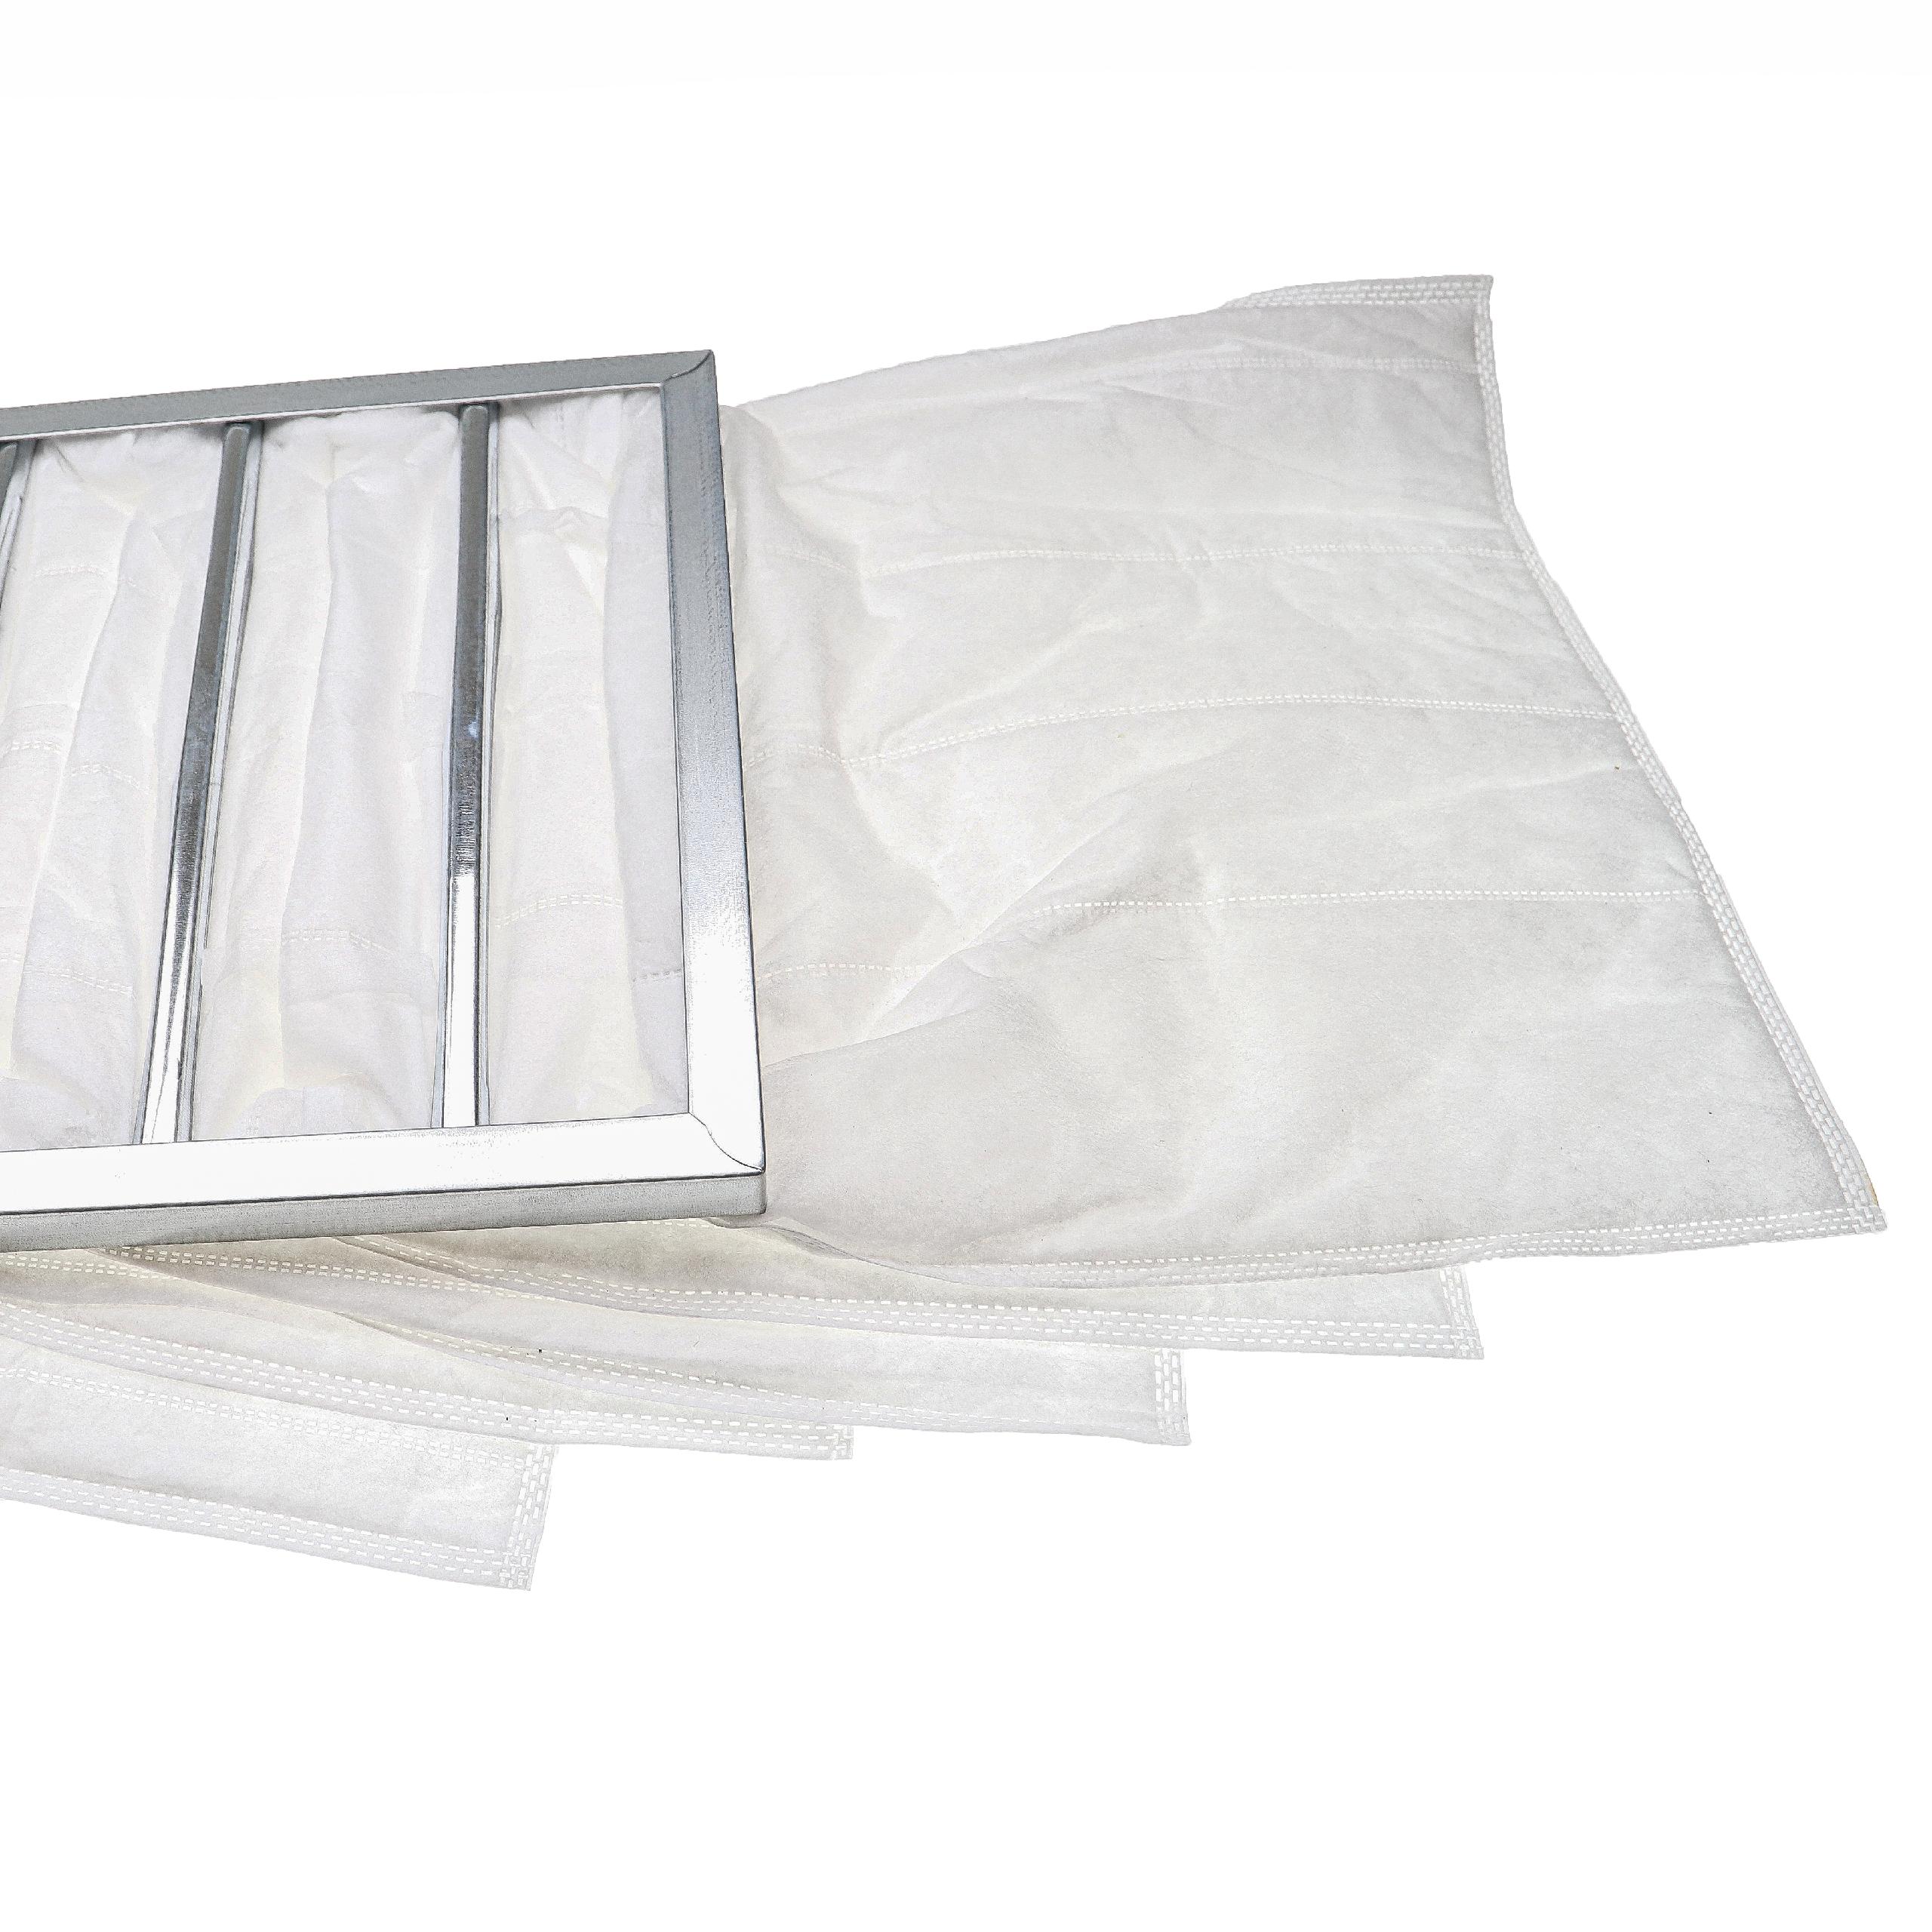 Bolsa de filtro G4 para aire acondicionado, ventilación - 38 x 29,5 x 59,2 cm